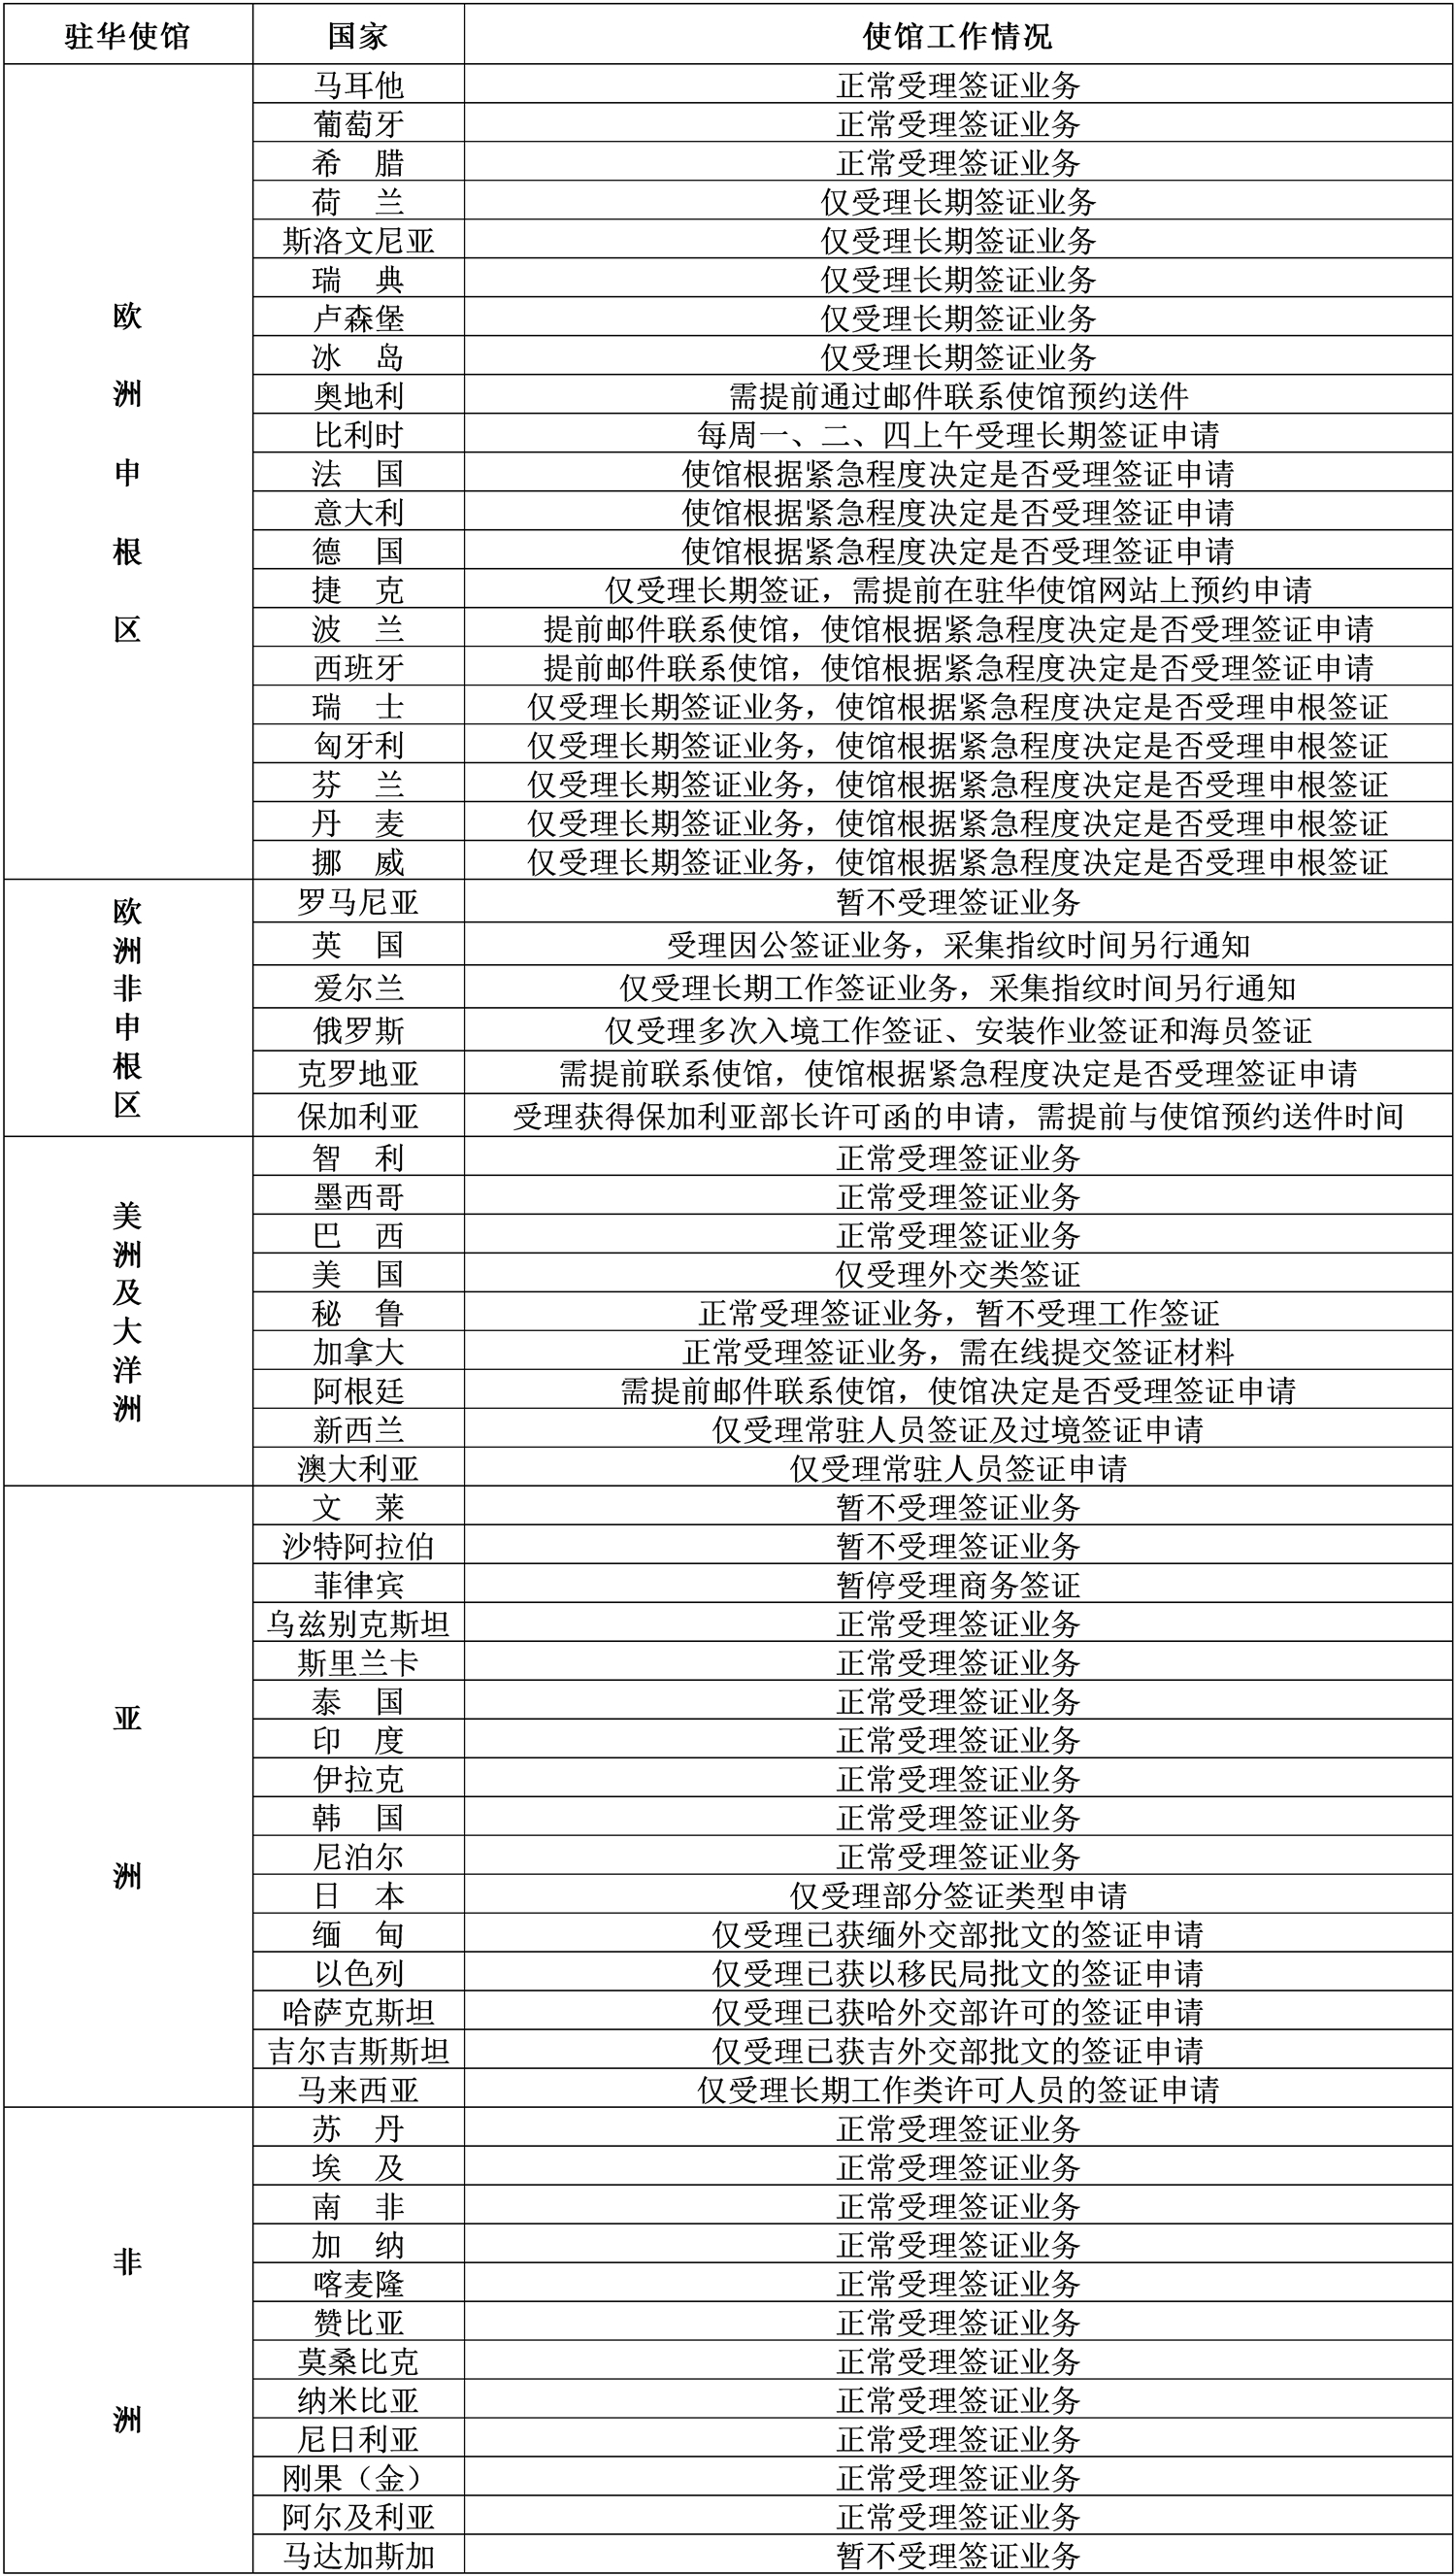 2021年3月29日部分驻华使馆工作情况统计表.jpg